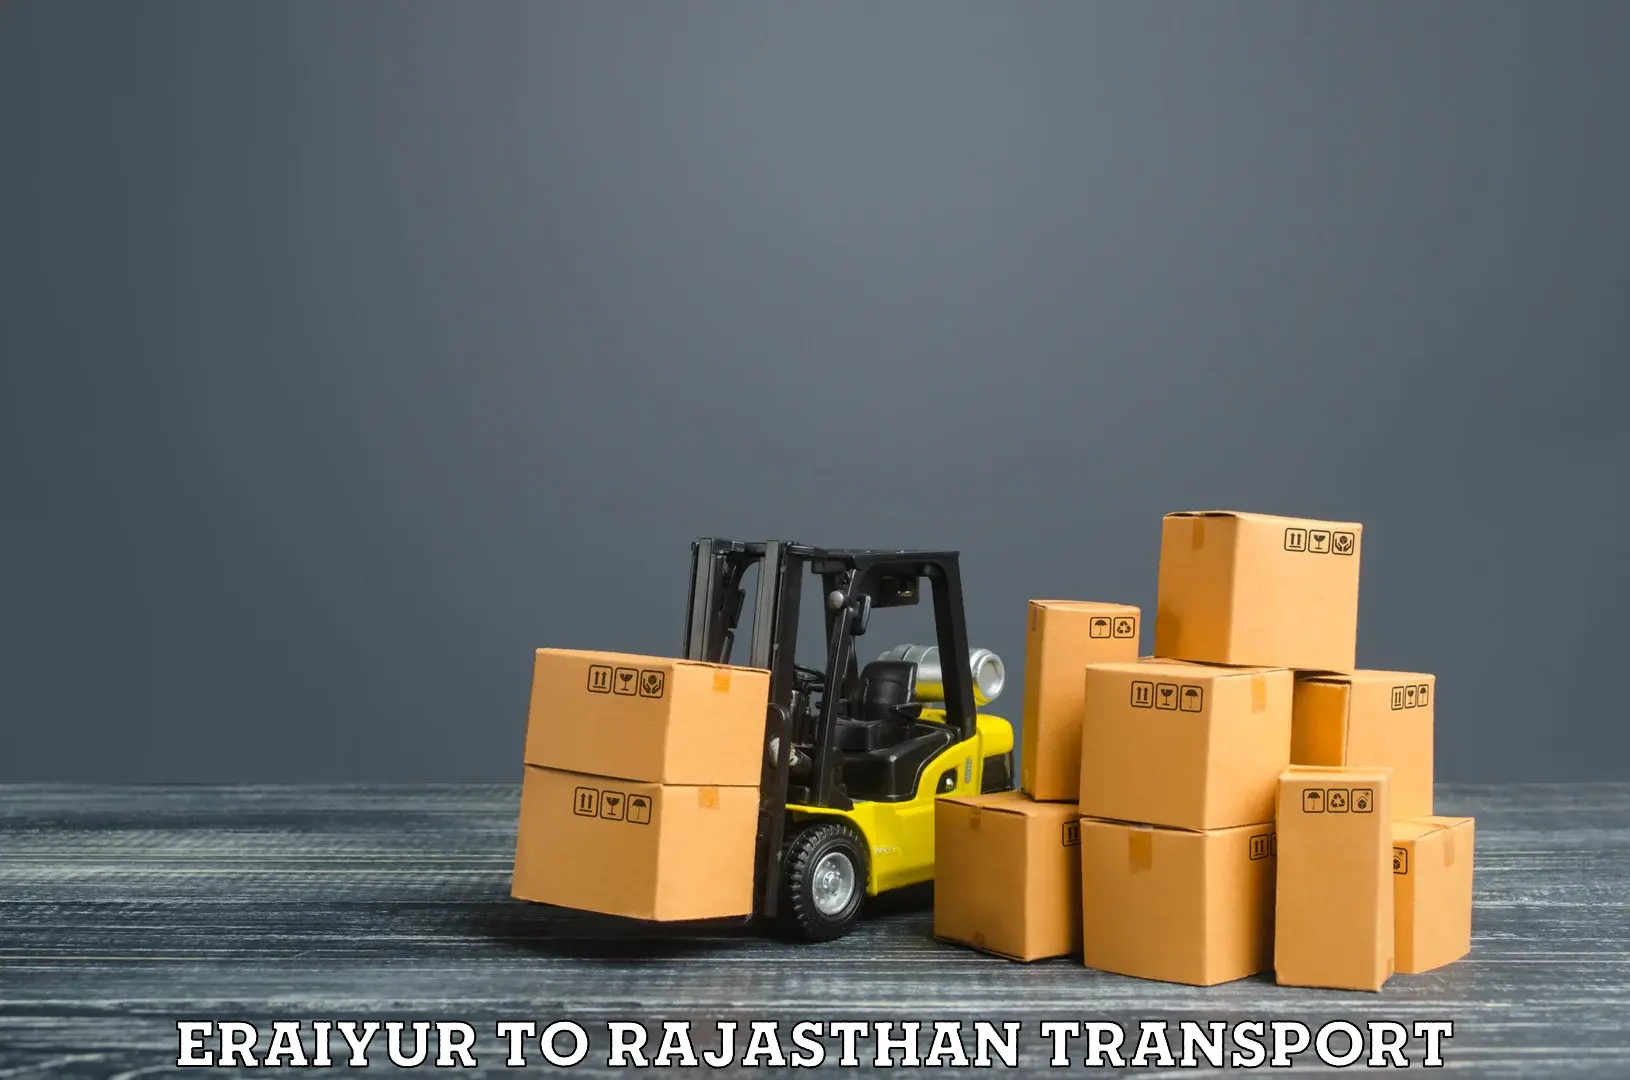 Shipping partner Eraiyur to Rajasthan